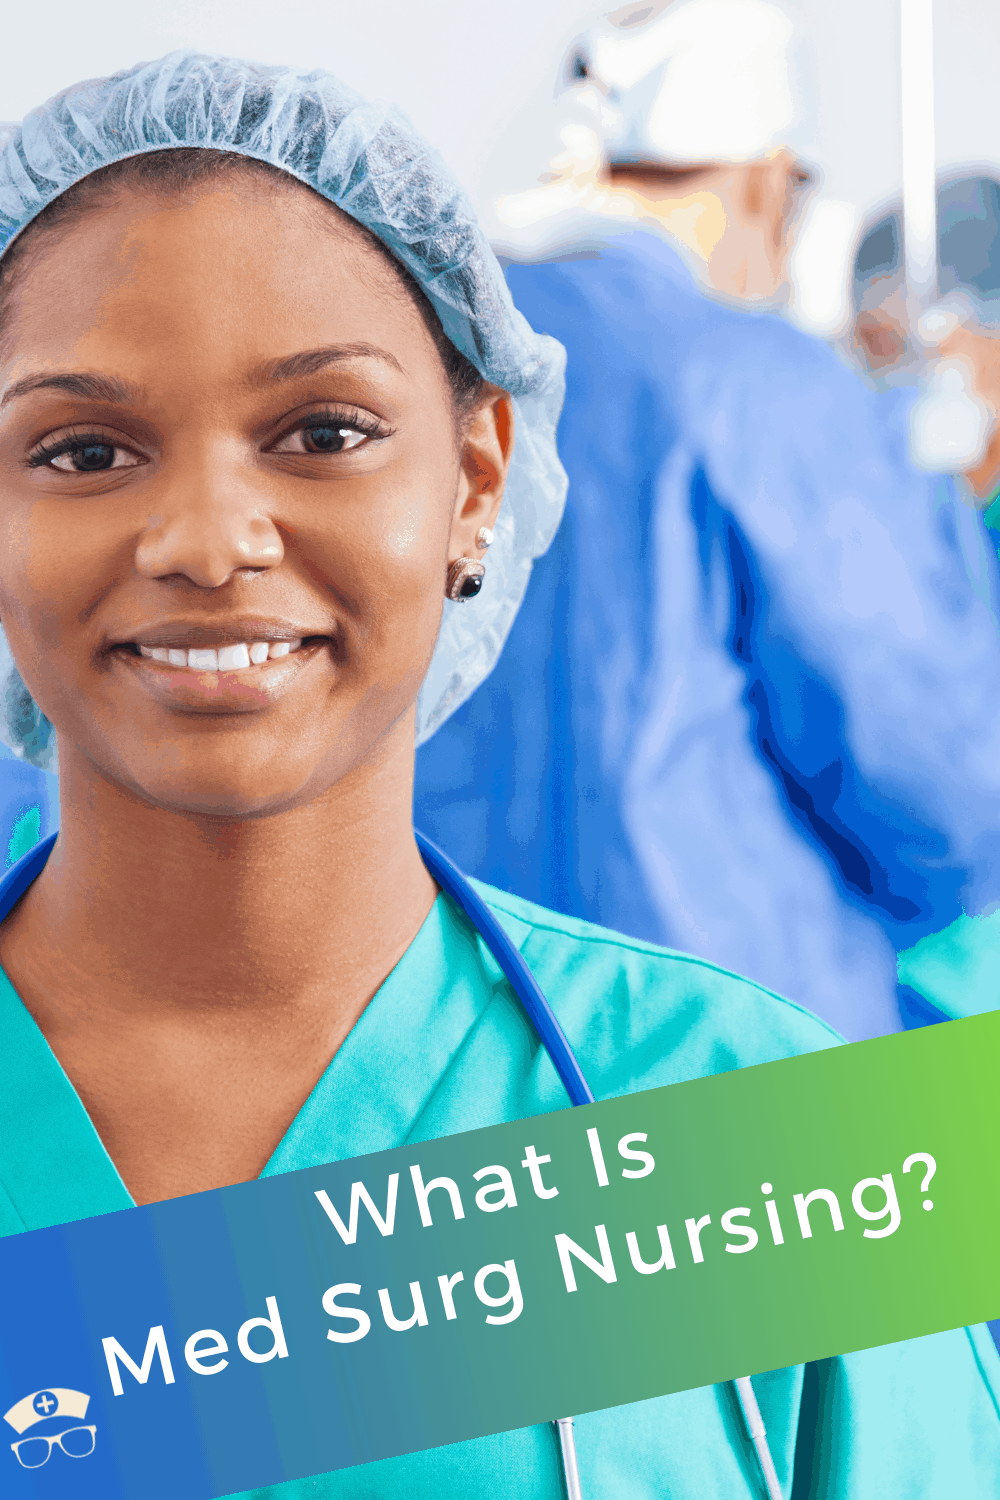 What Is Med Surg Nursing?